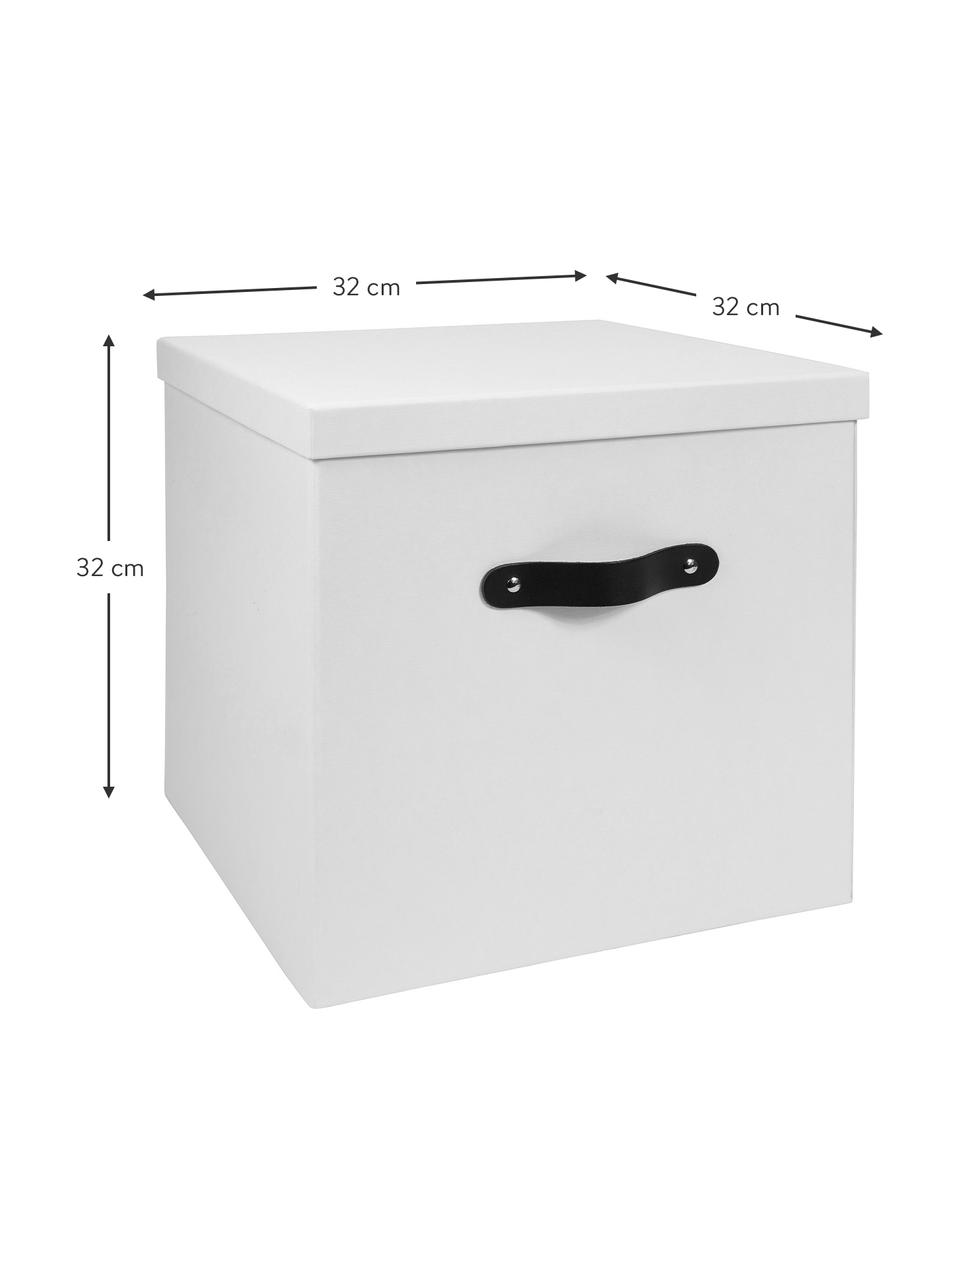 Aufbewahrungsbox Texas, Box: Fester, laminierter Karto, Griff: Leder, Weiß, 32 x 32 cm